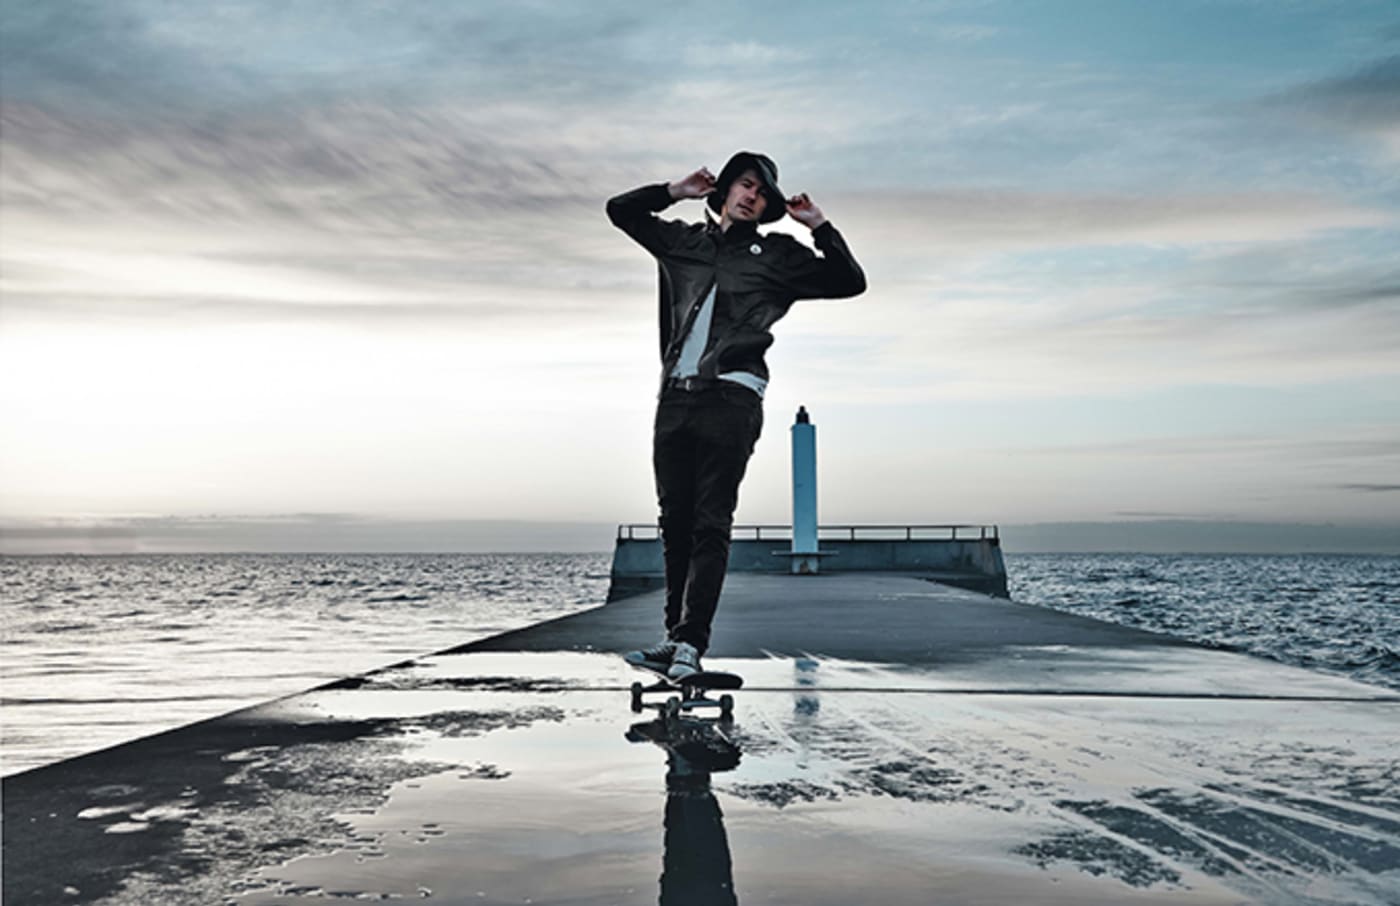 Danish Pro Skater Rune Glifberg Hops on Board for Volcom x Rains Spring ...